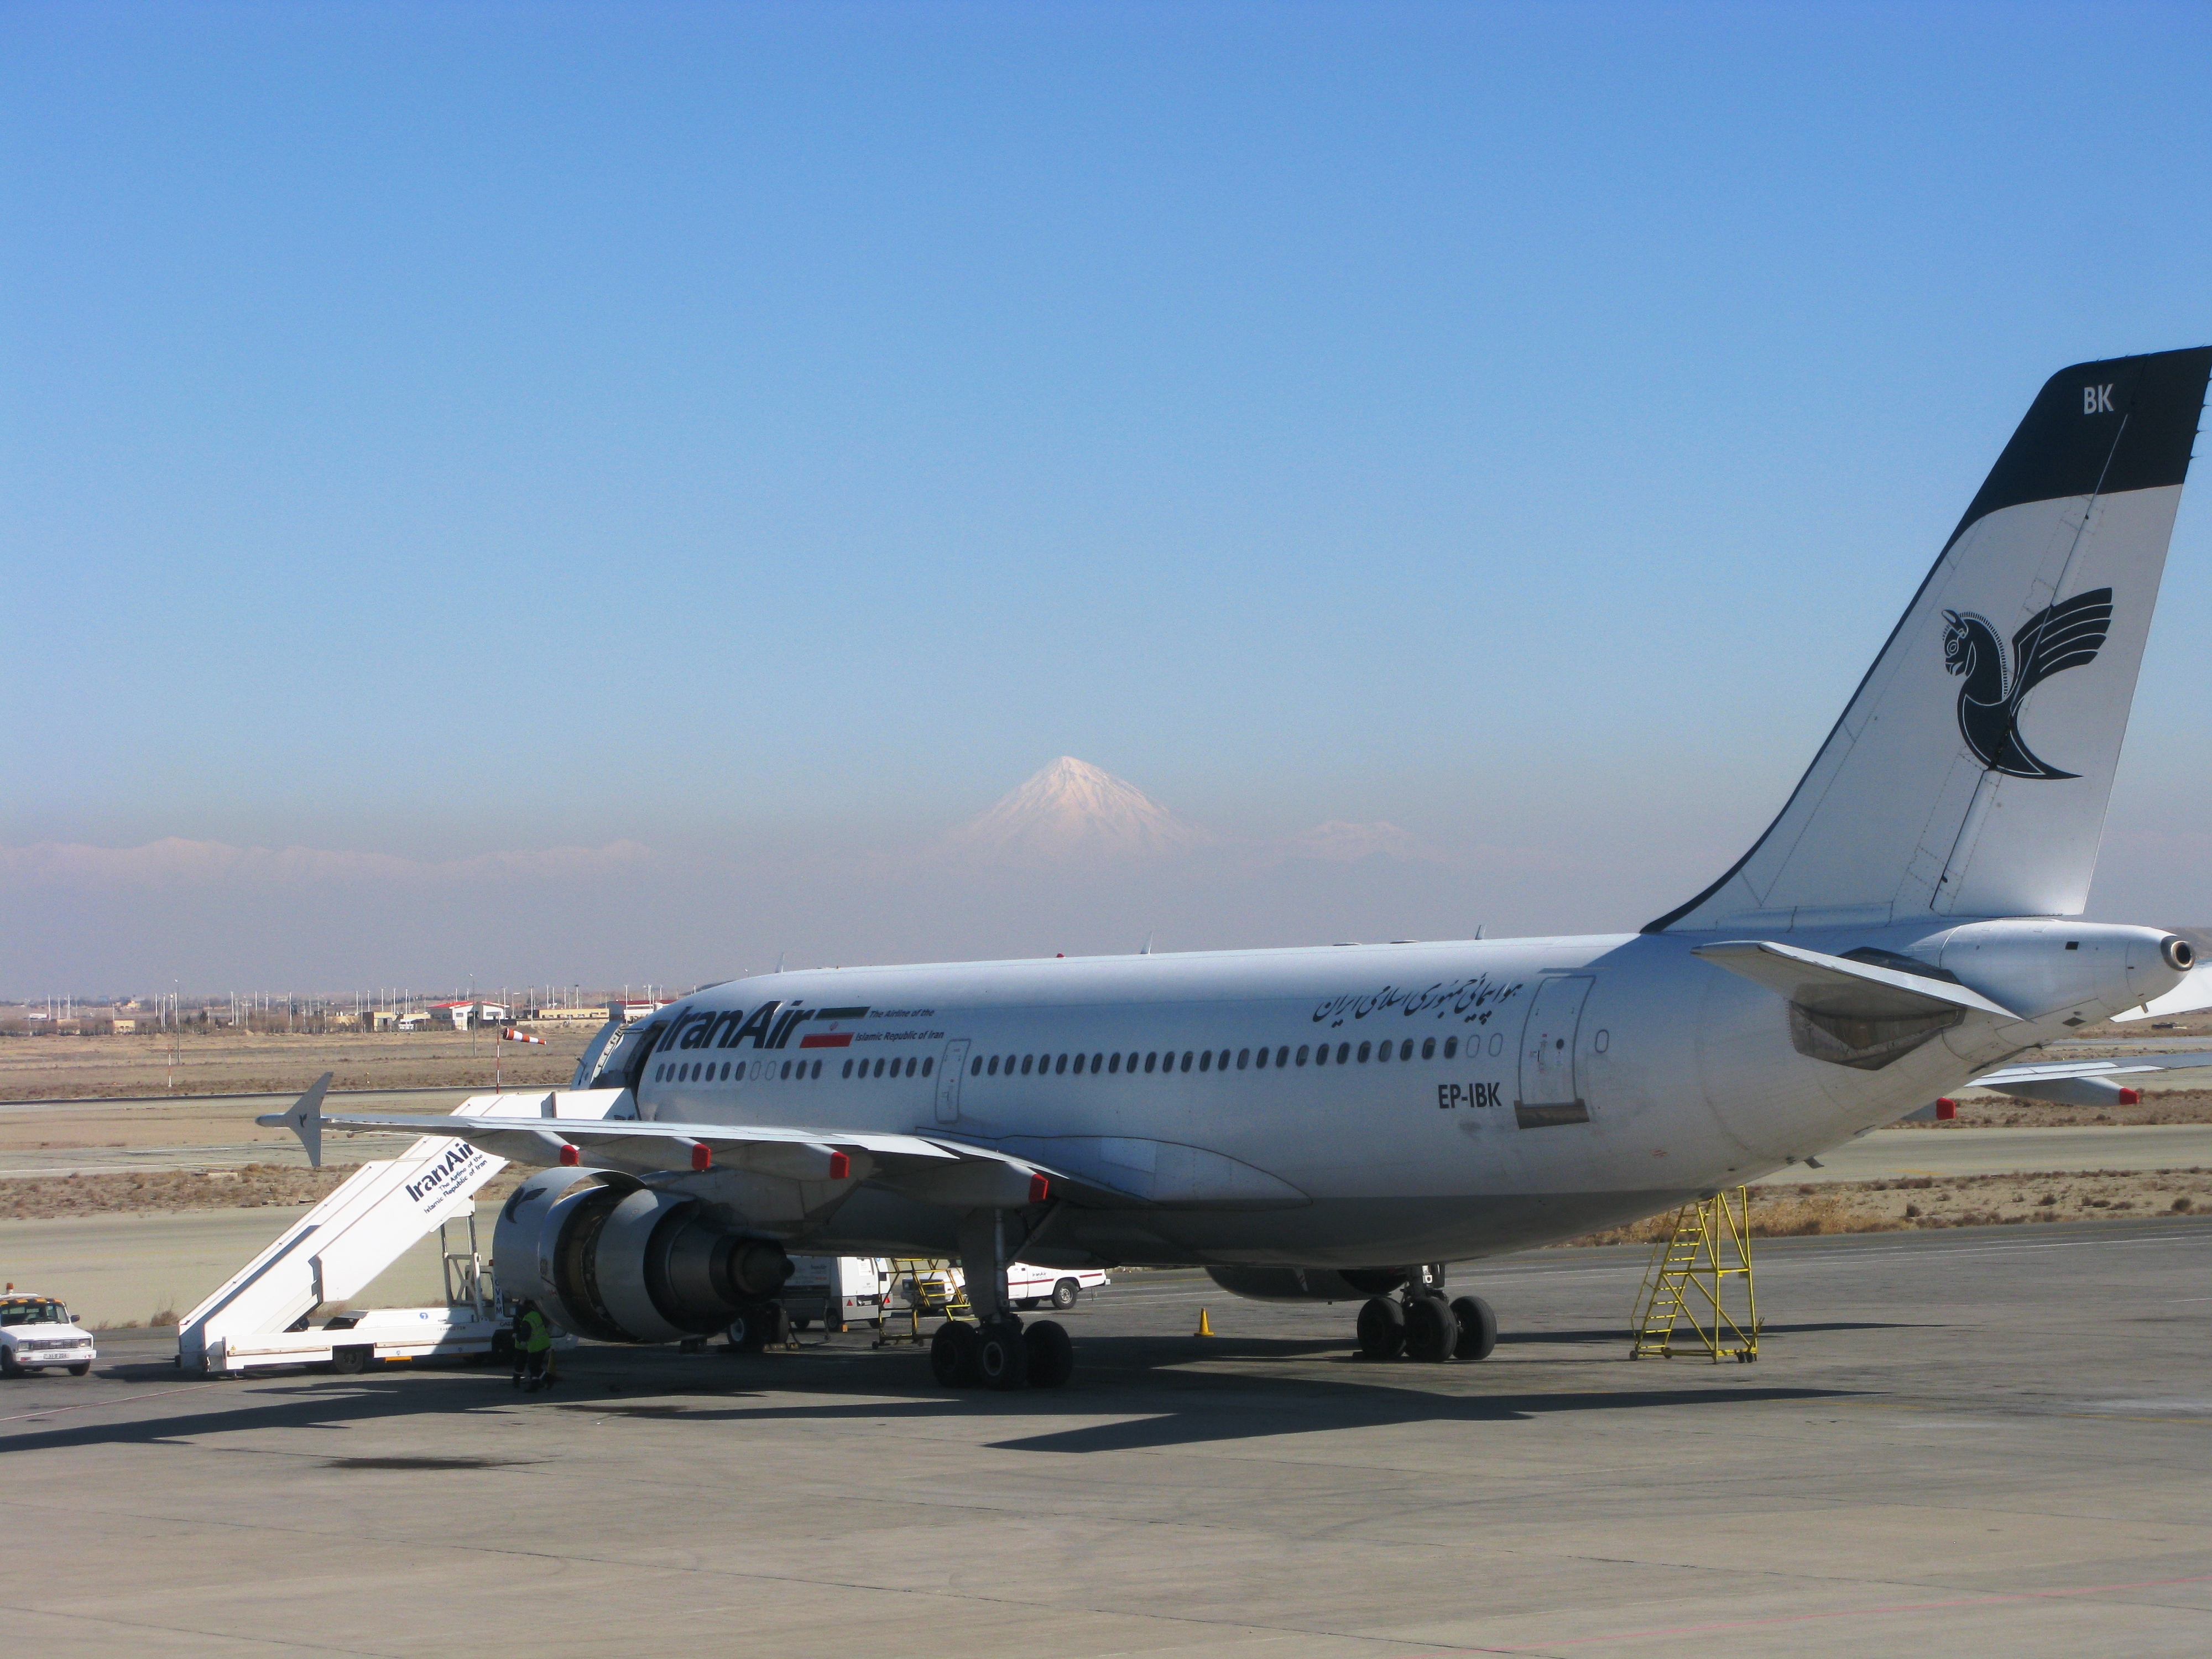  فرودگاه بین المللی امام خمینی با نمای کوه دماوند 